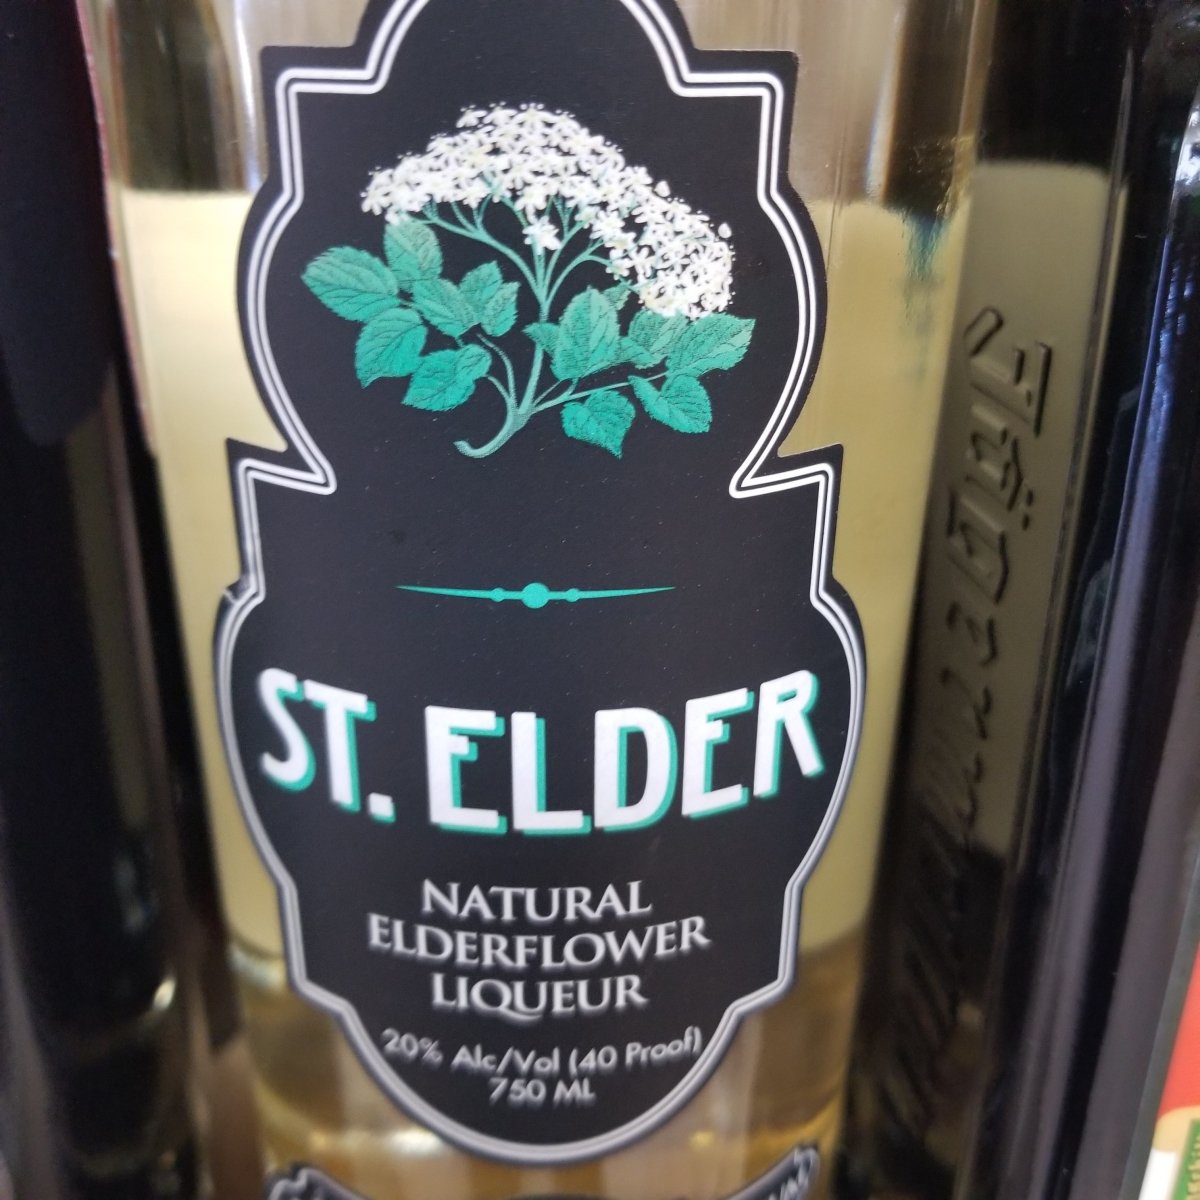 St Elder Elderflower 750ml (Better than St-Germain) - Sip & Say